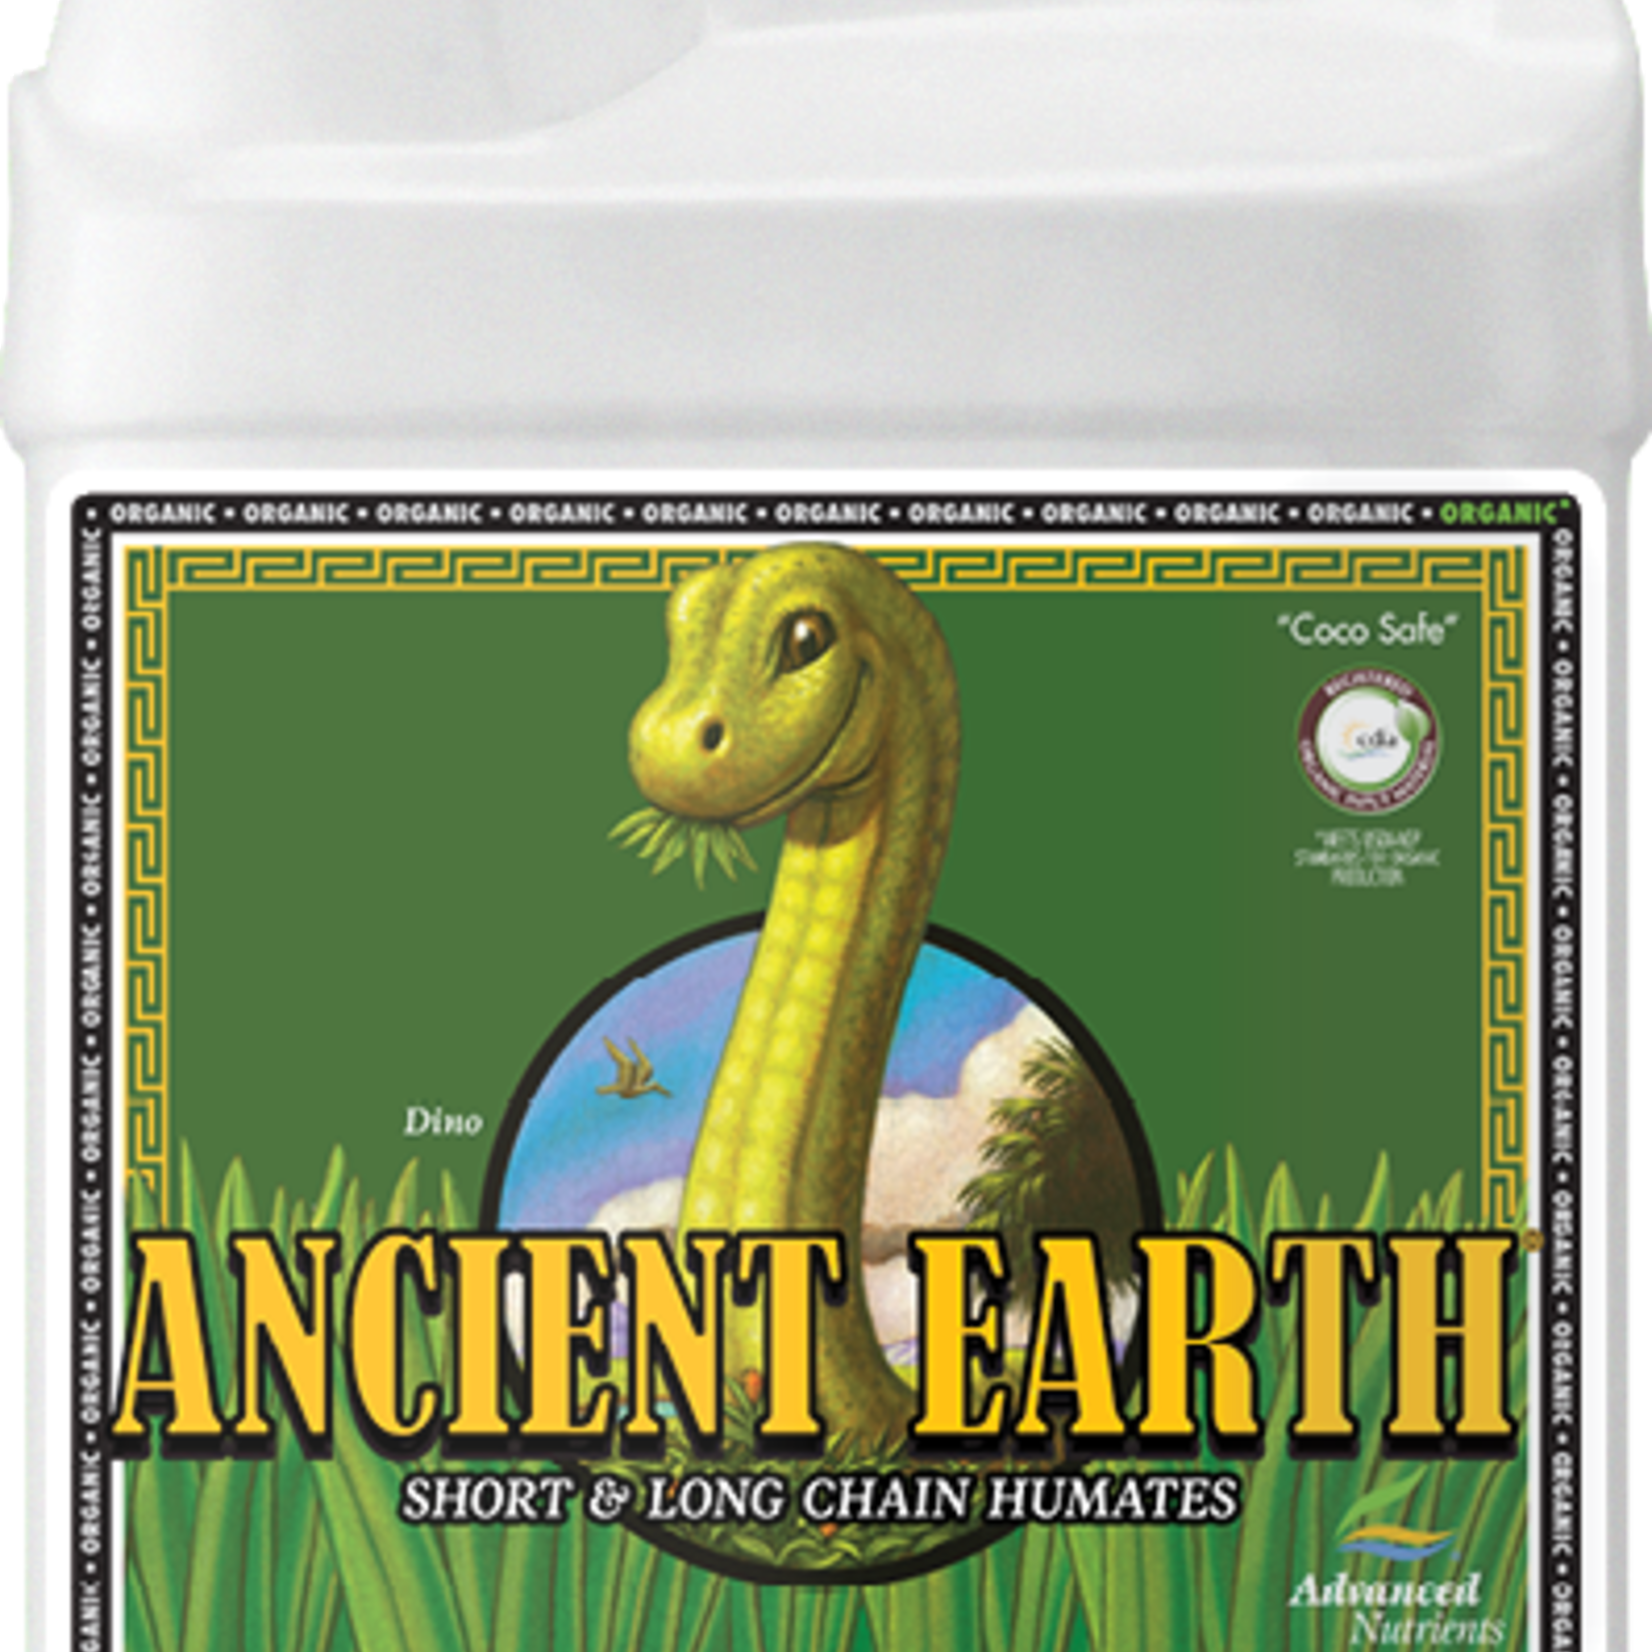 Advanced Nutrients Advanced Nutrients Ancient Earth Organic